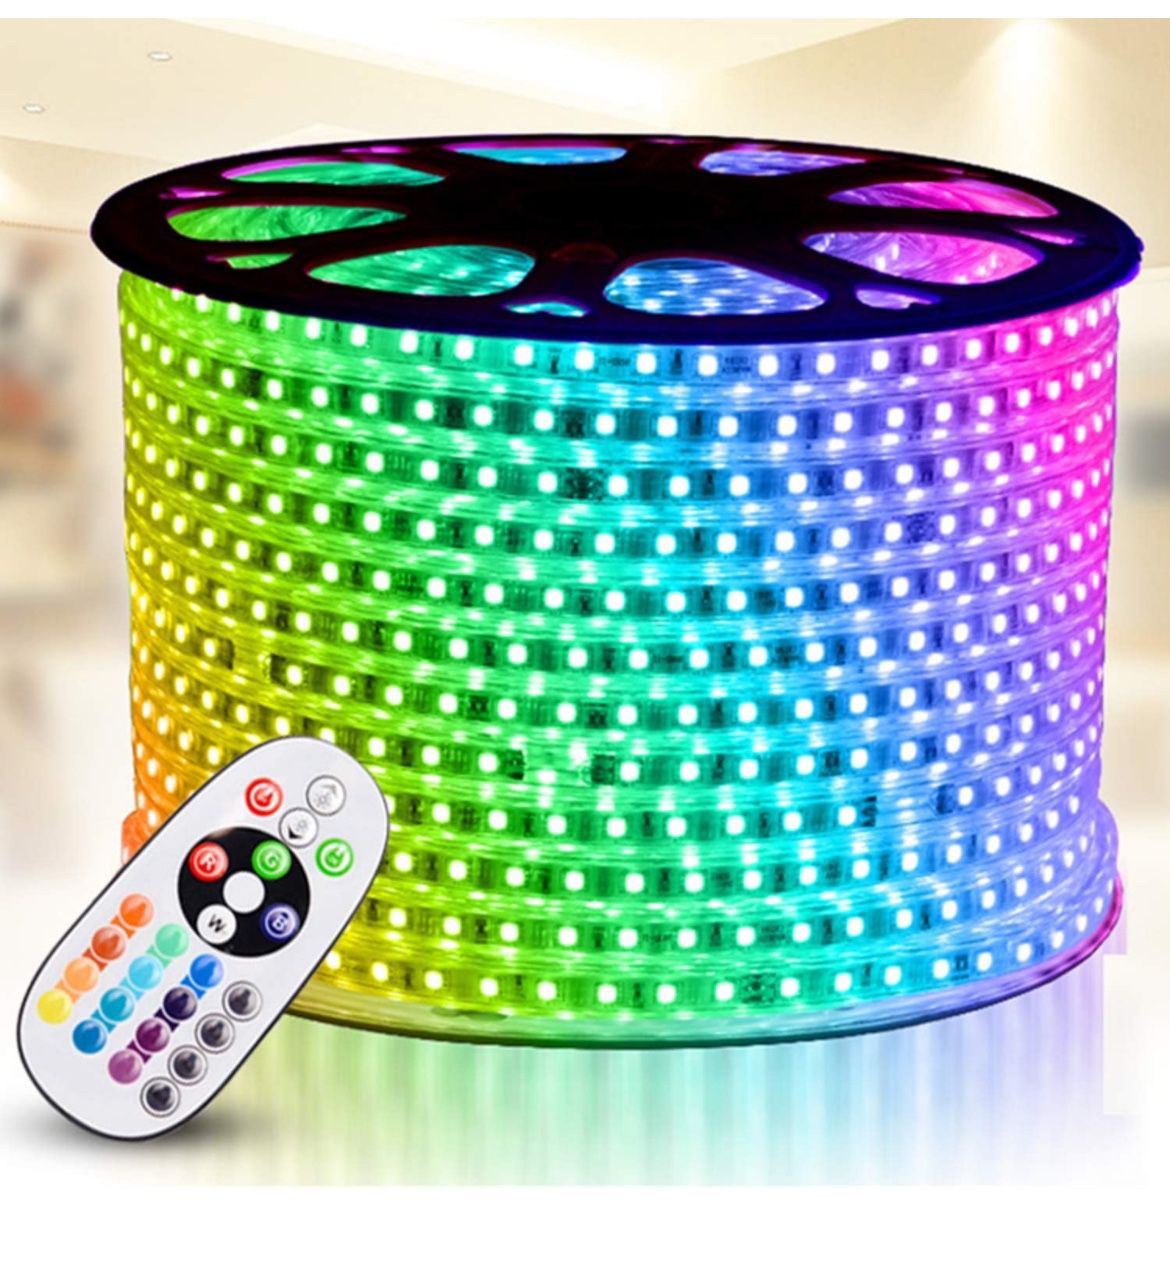 IEKOV RGB LED Strip Light, AC 110-120V 